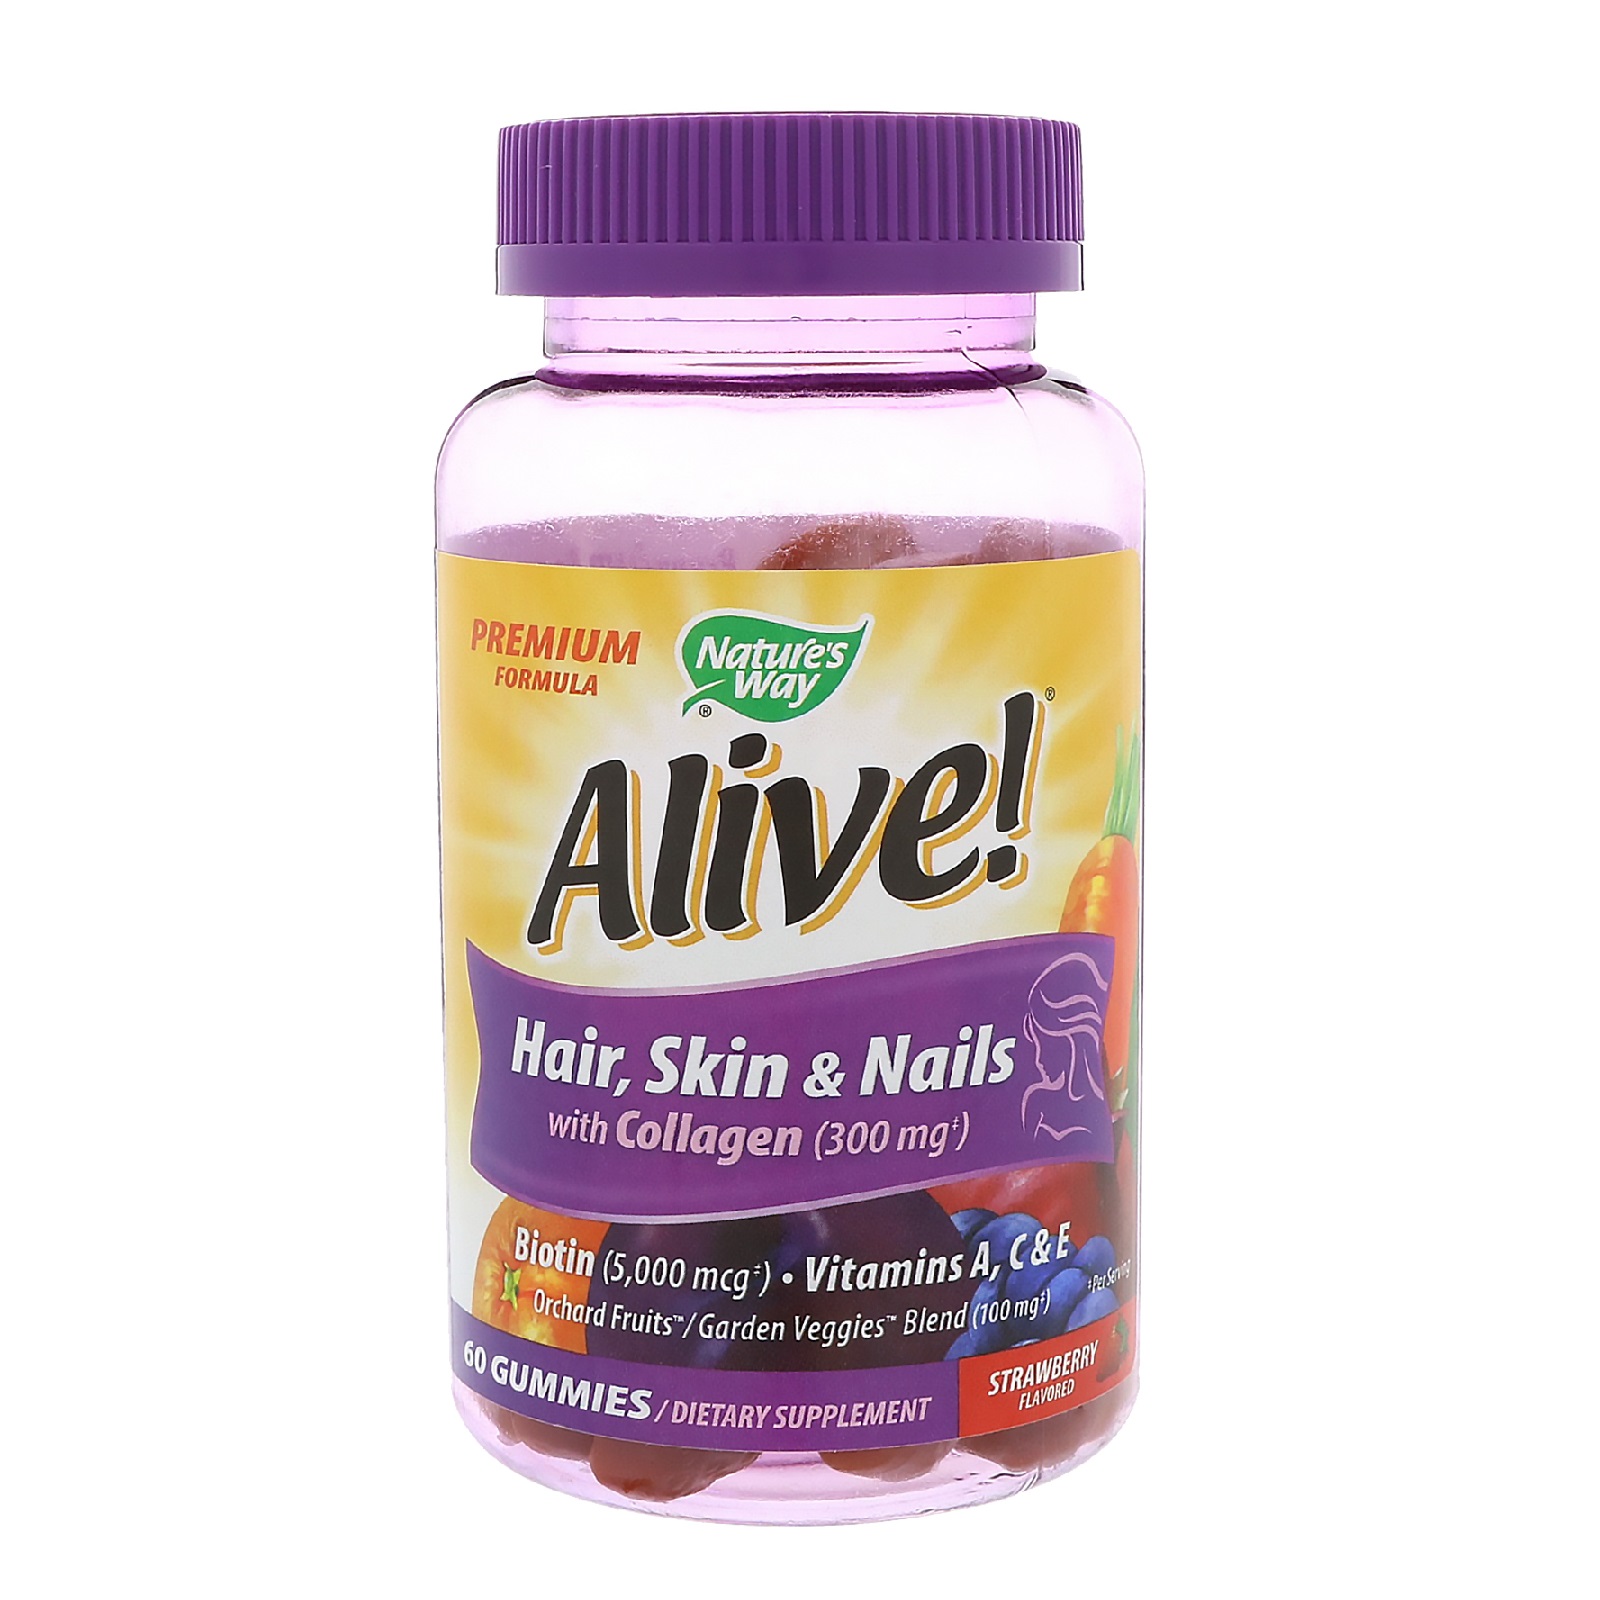 Лучшие витамины для женщин волосы ногти кожа. Витамины для волос hair Skin Nails natures. Витамины для волос ногтей и кожи айхерб. Alive витамины для волос. Витамины Alive для кожи, волос.